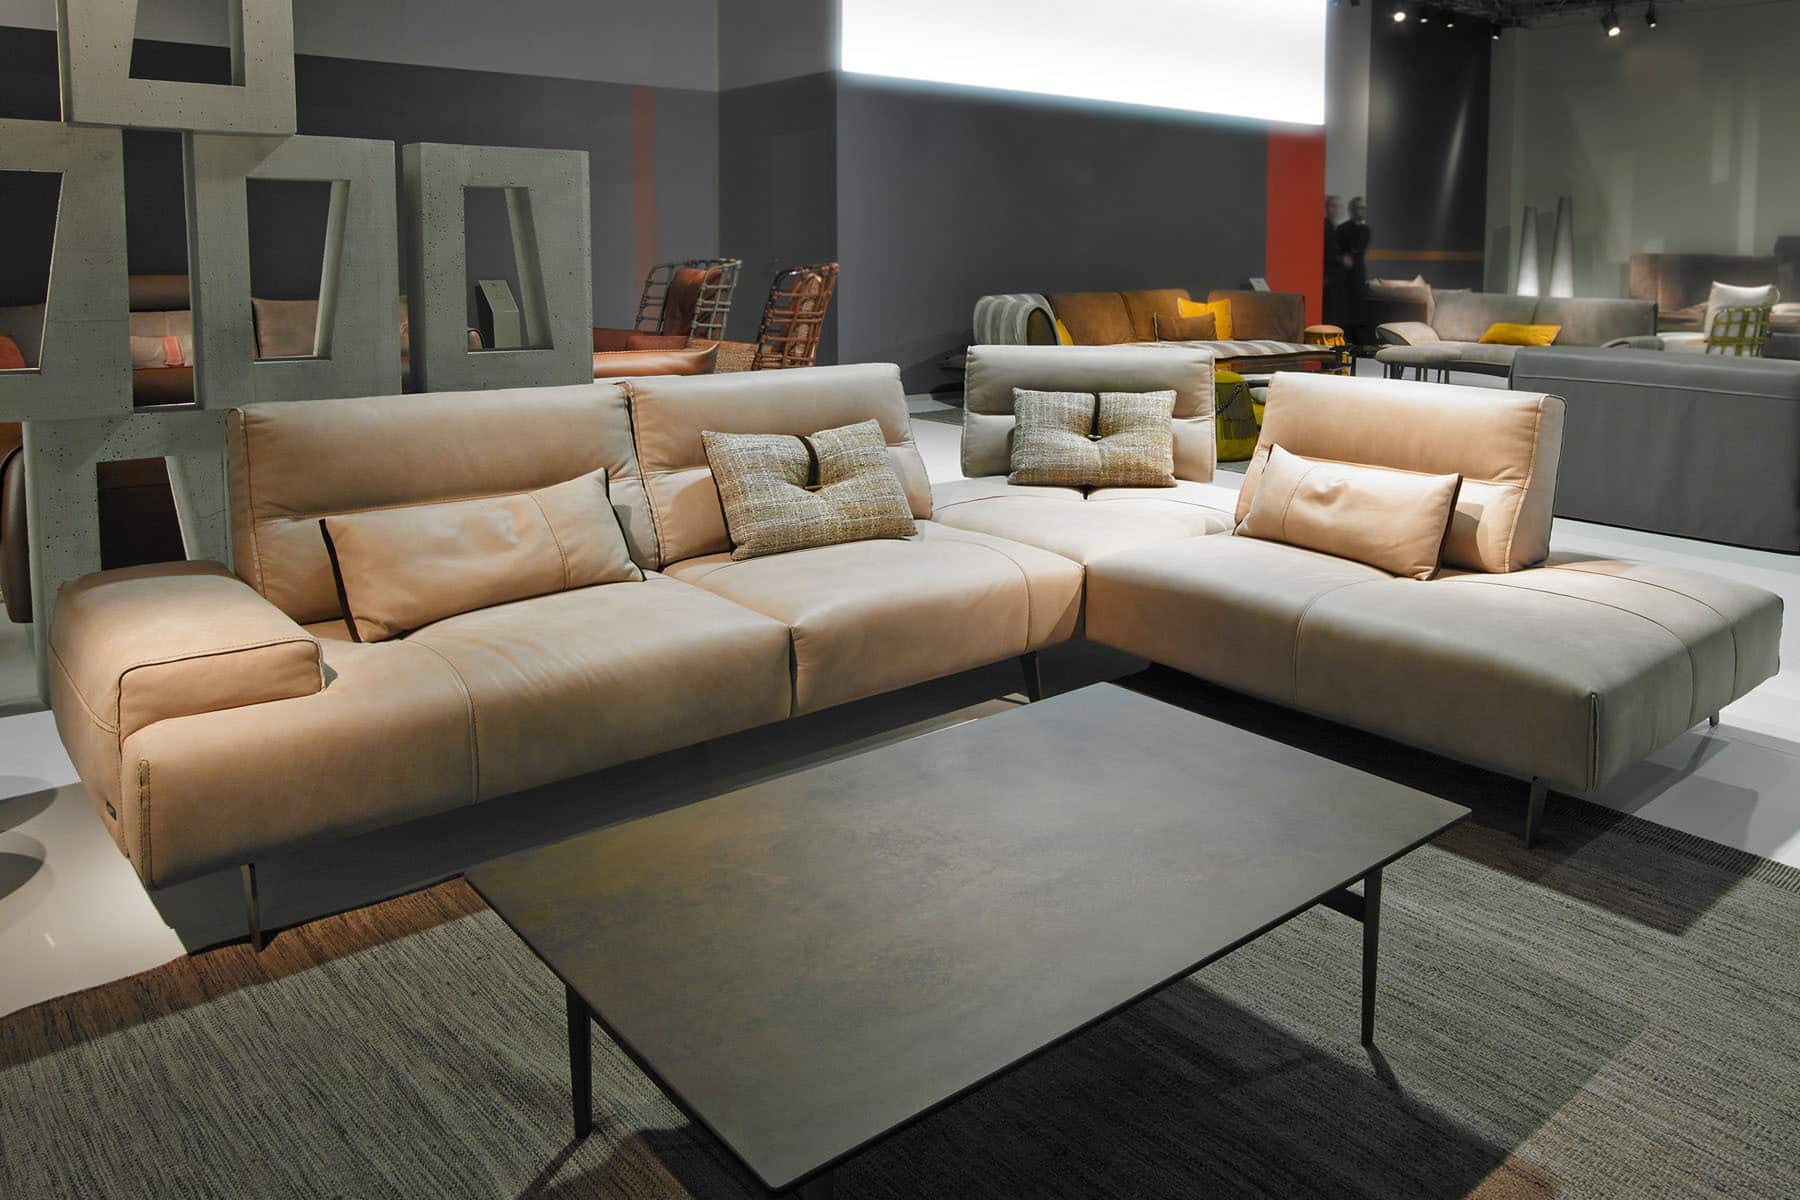 Modern Tan Leather Sectional Sofa | Expert Interior Design Tips at San Fran Design | Furniture Store in Utah